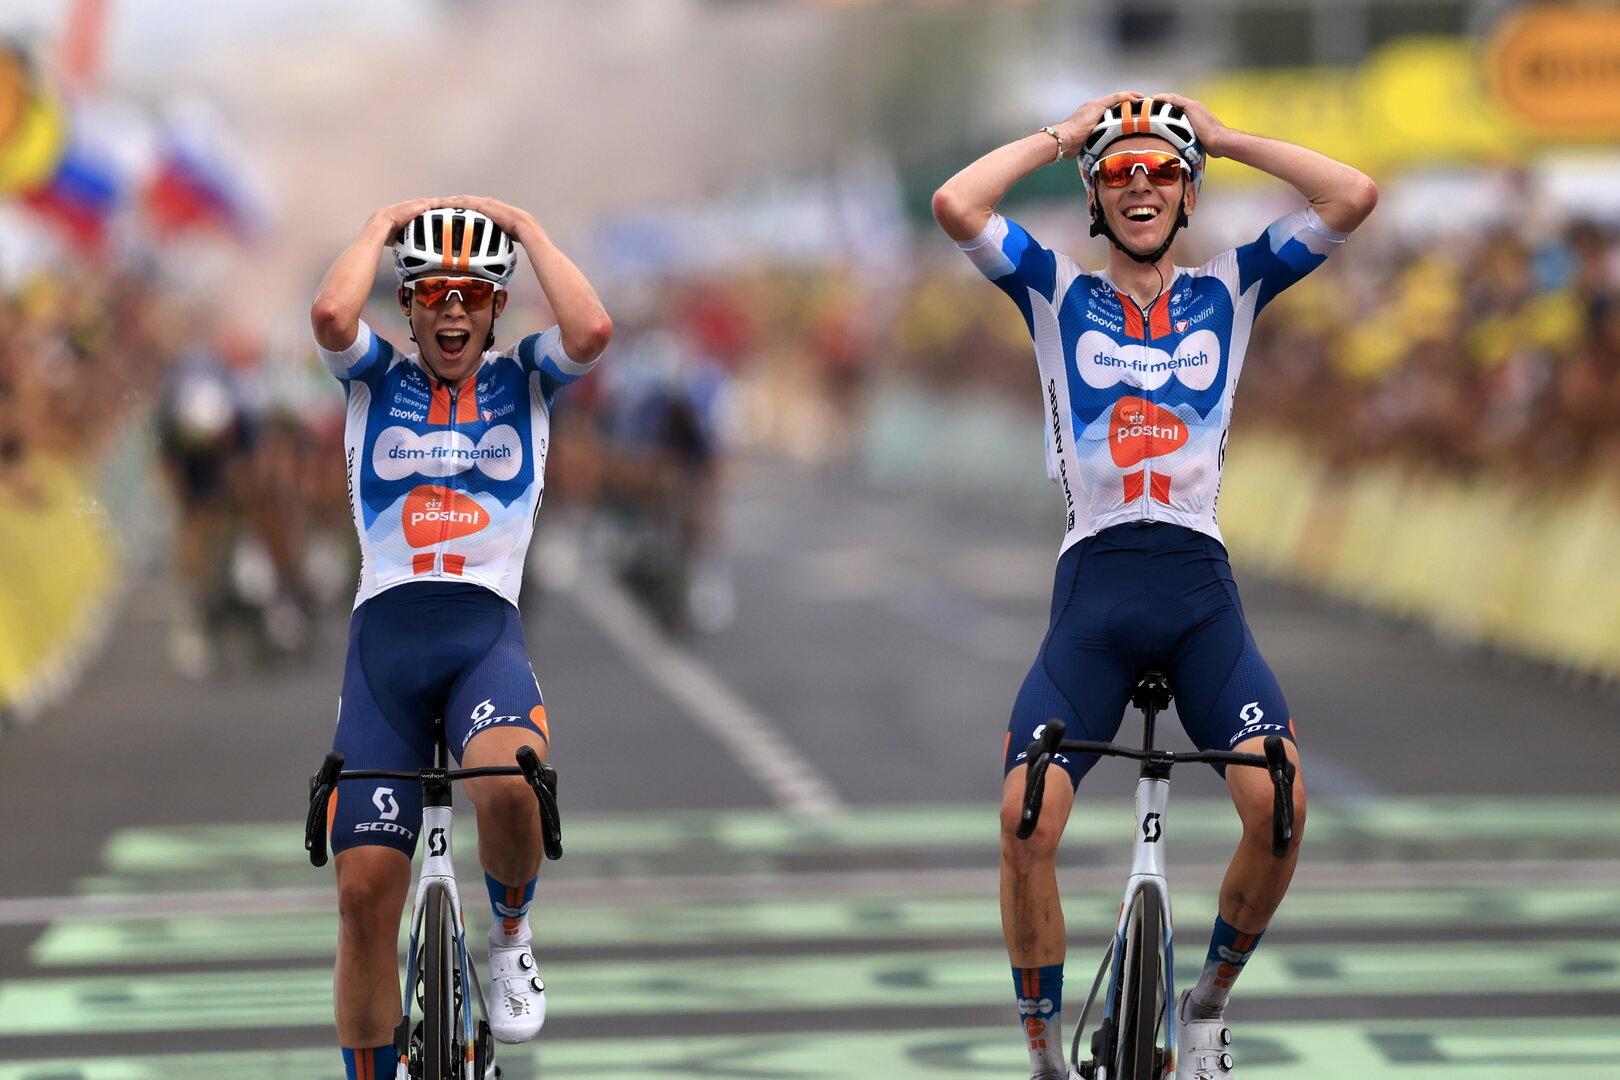 Hitziger Auftakt der Tour de France: Ausreißer-Duo feiert Doppelsieg